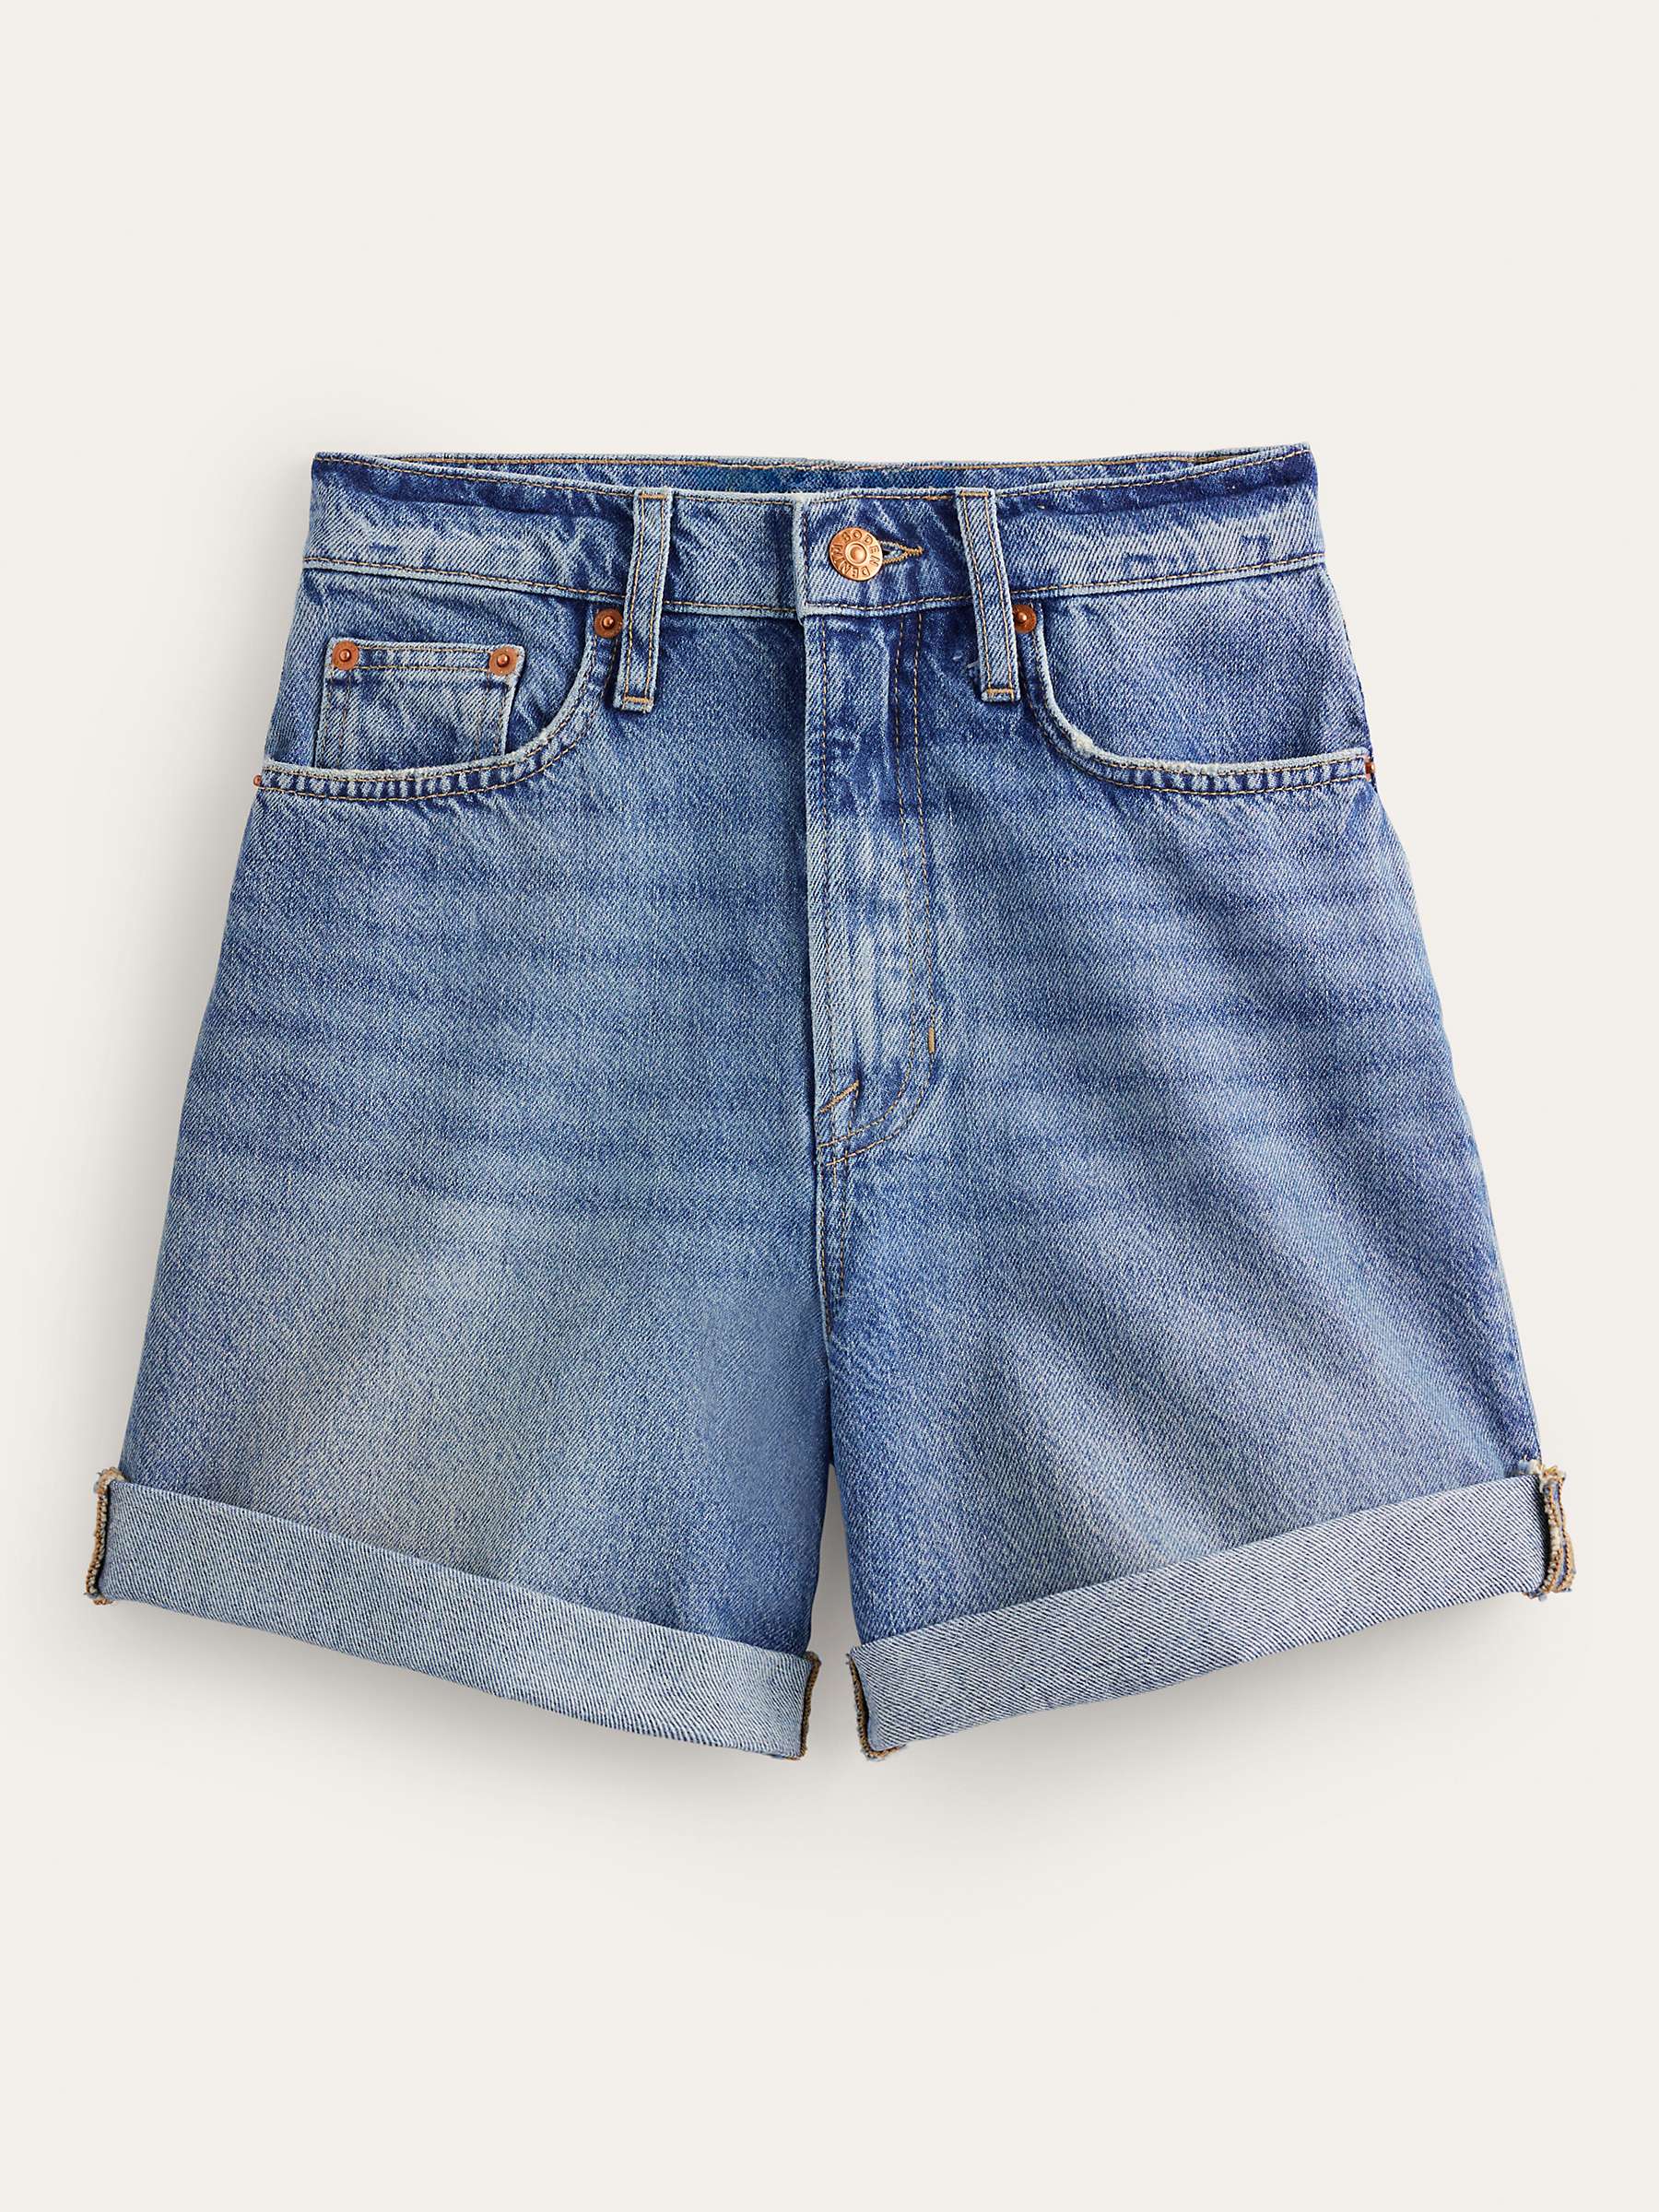 Buy Boden Denim Shorts, Mid Vintage Online at johnlewis.com